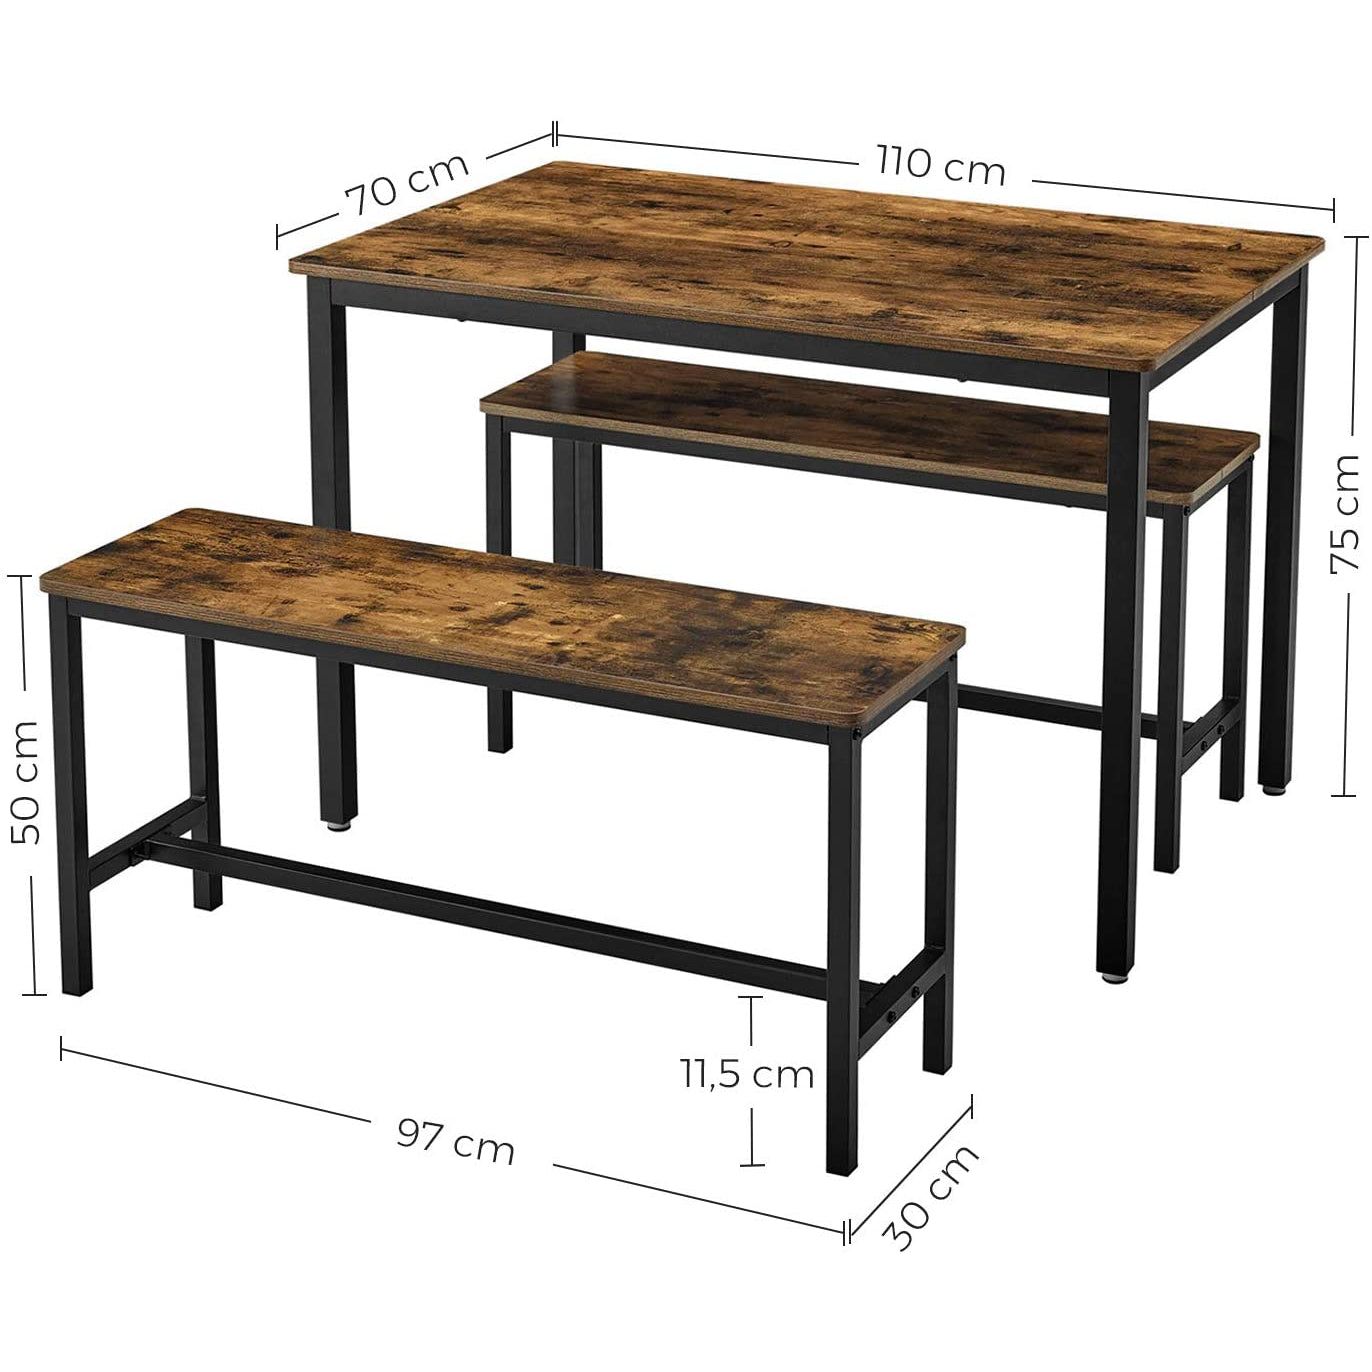 Table à manger de Nancy avec 2 bancs - Pour 4 personnes - Table de cuisine - Table industrielle - Table de salle à manger - 110 x 75 x 75 cm